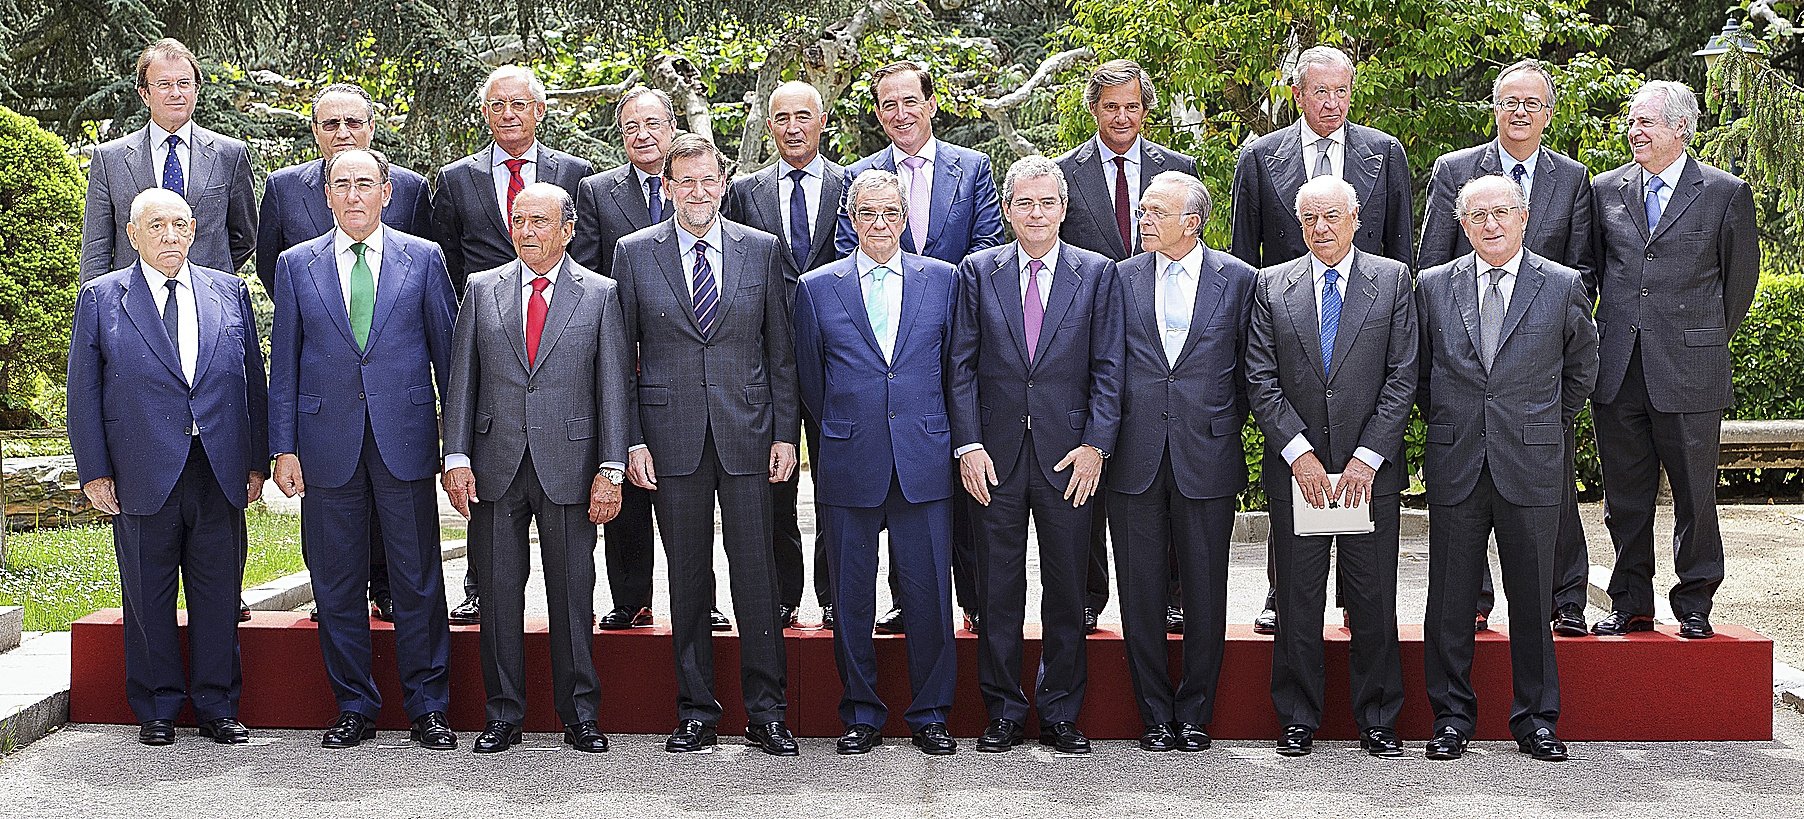 Csar Alierta y el resto de miembros del Consejo de la Competitividad junto a Mariano Rajoy